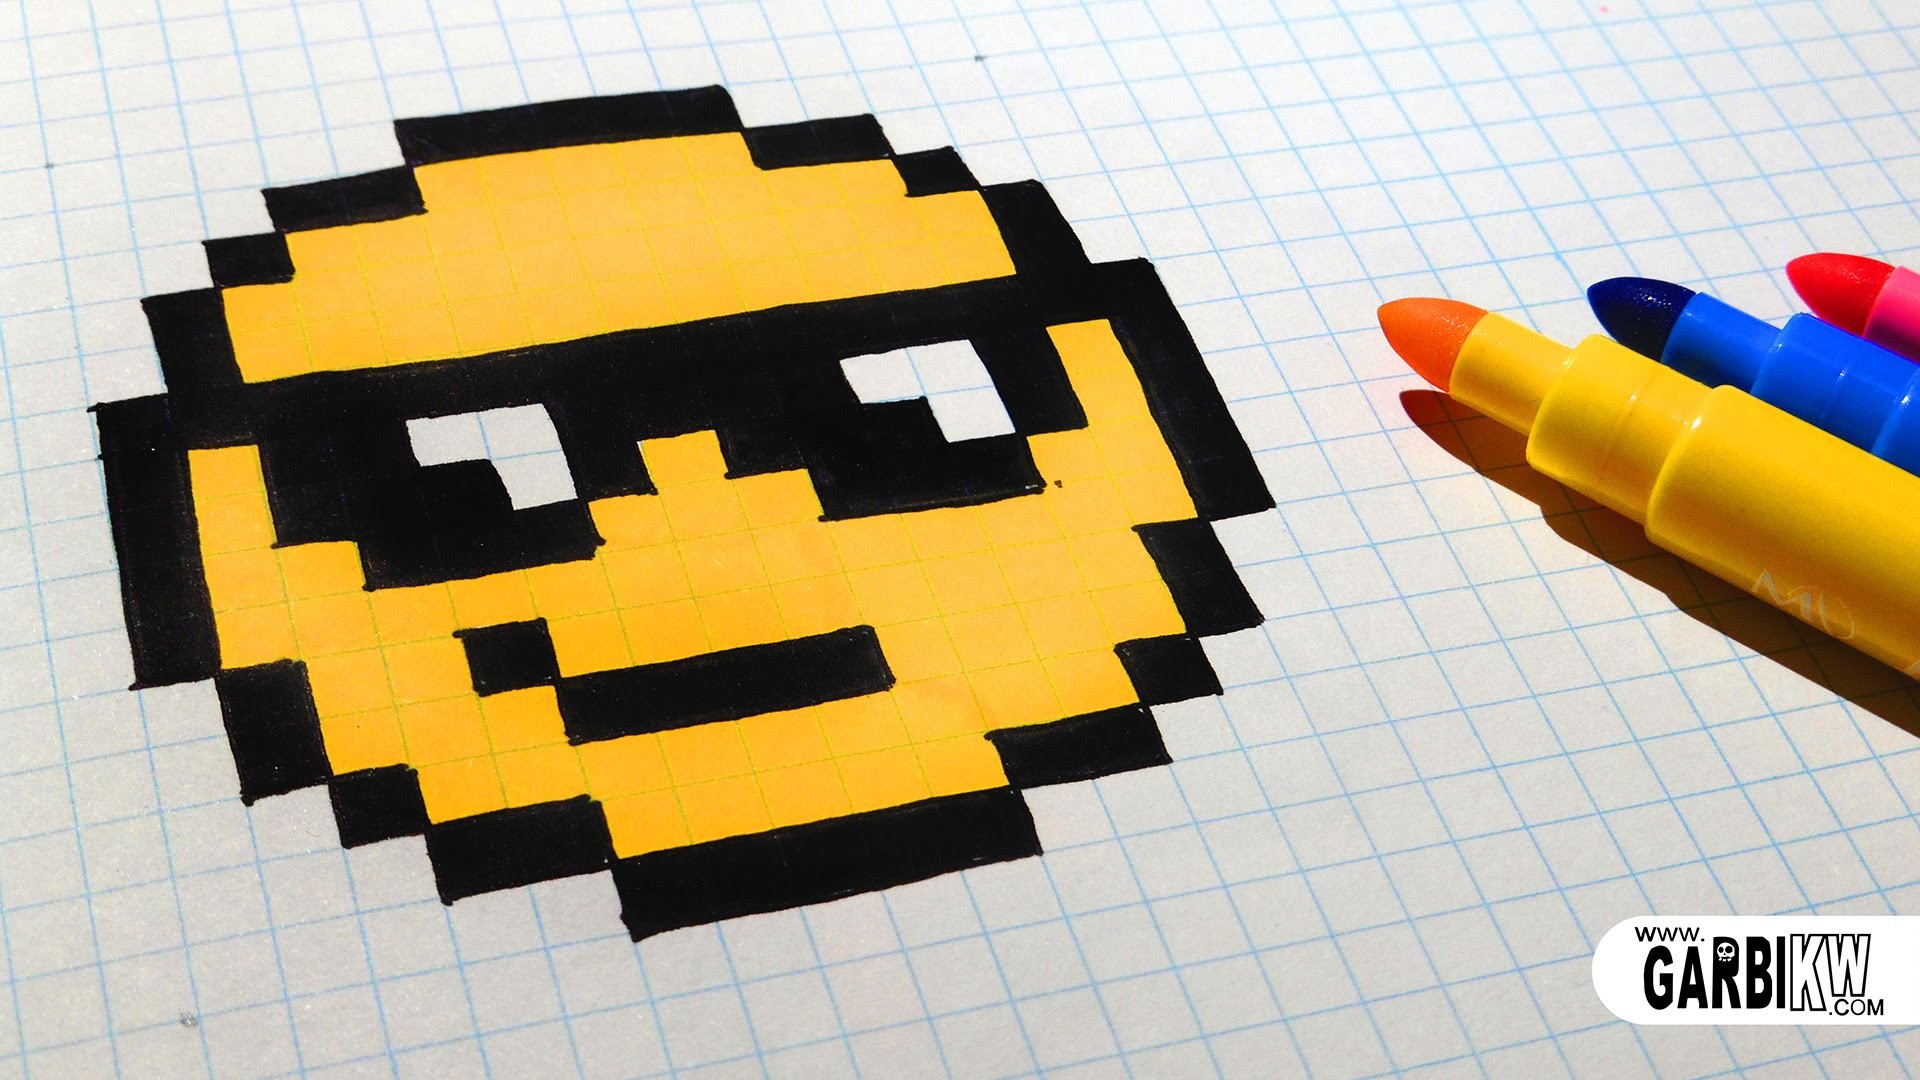 Handmade Pixel Art - How To Draw The Sunglasses emoji #pixelart